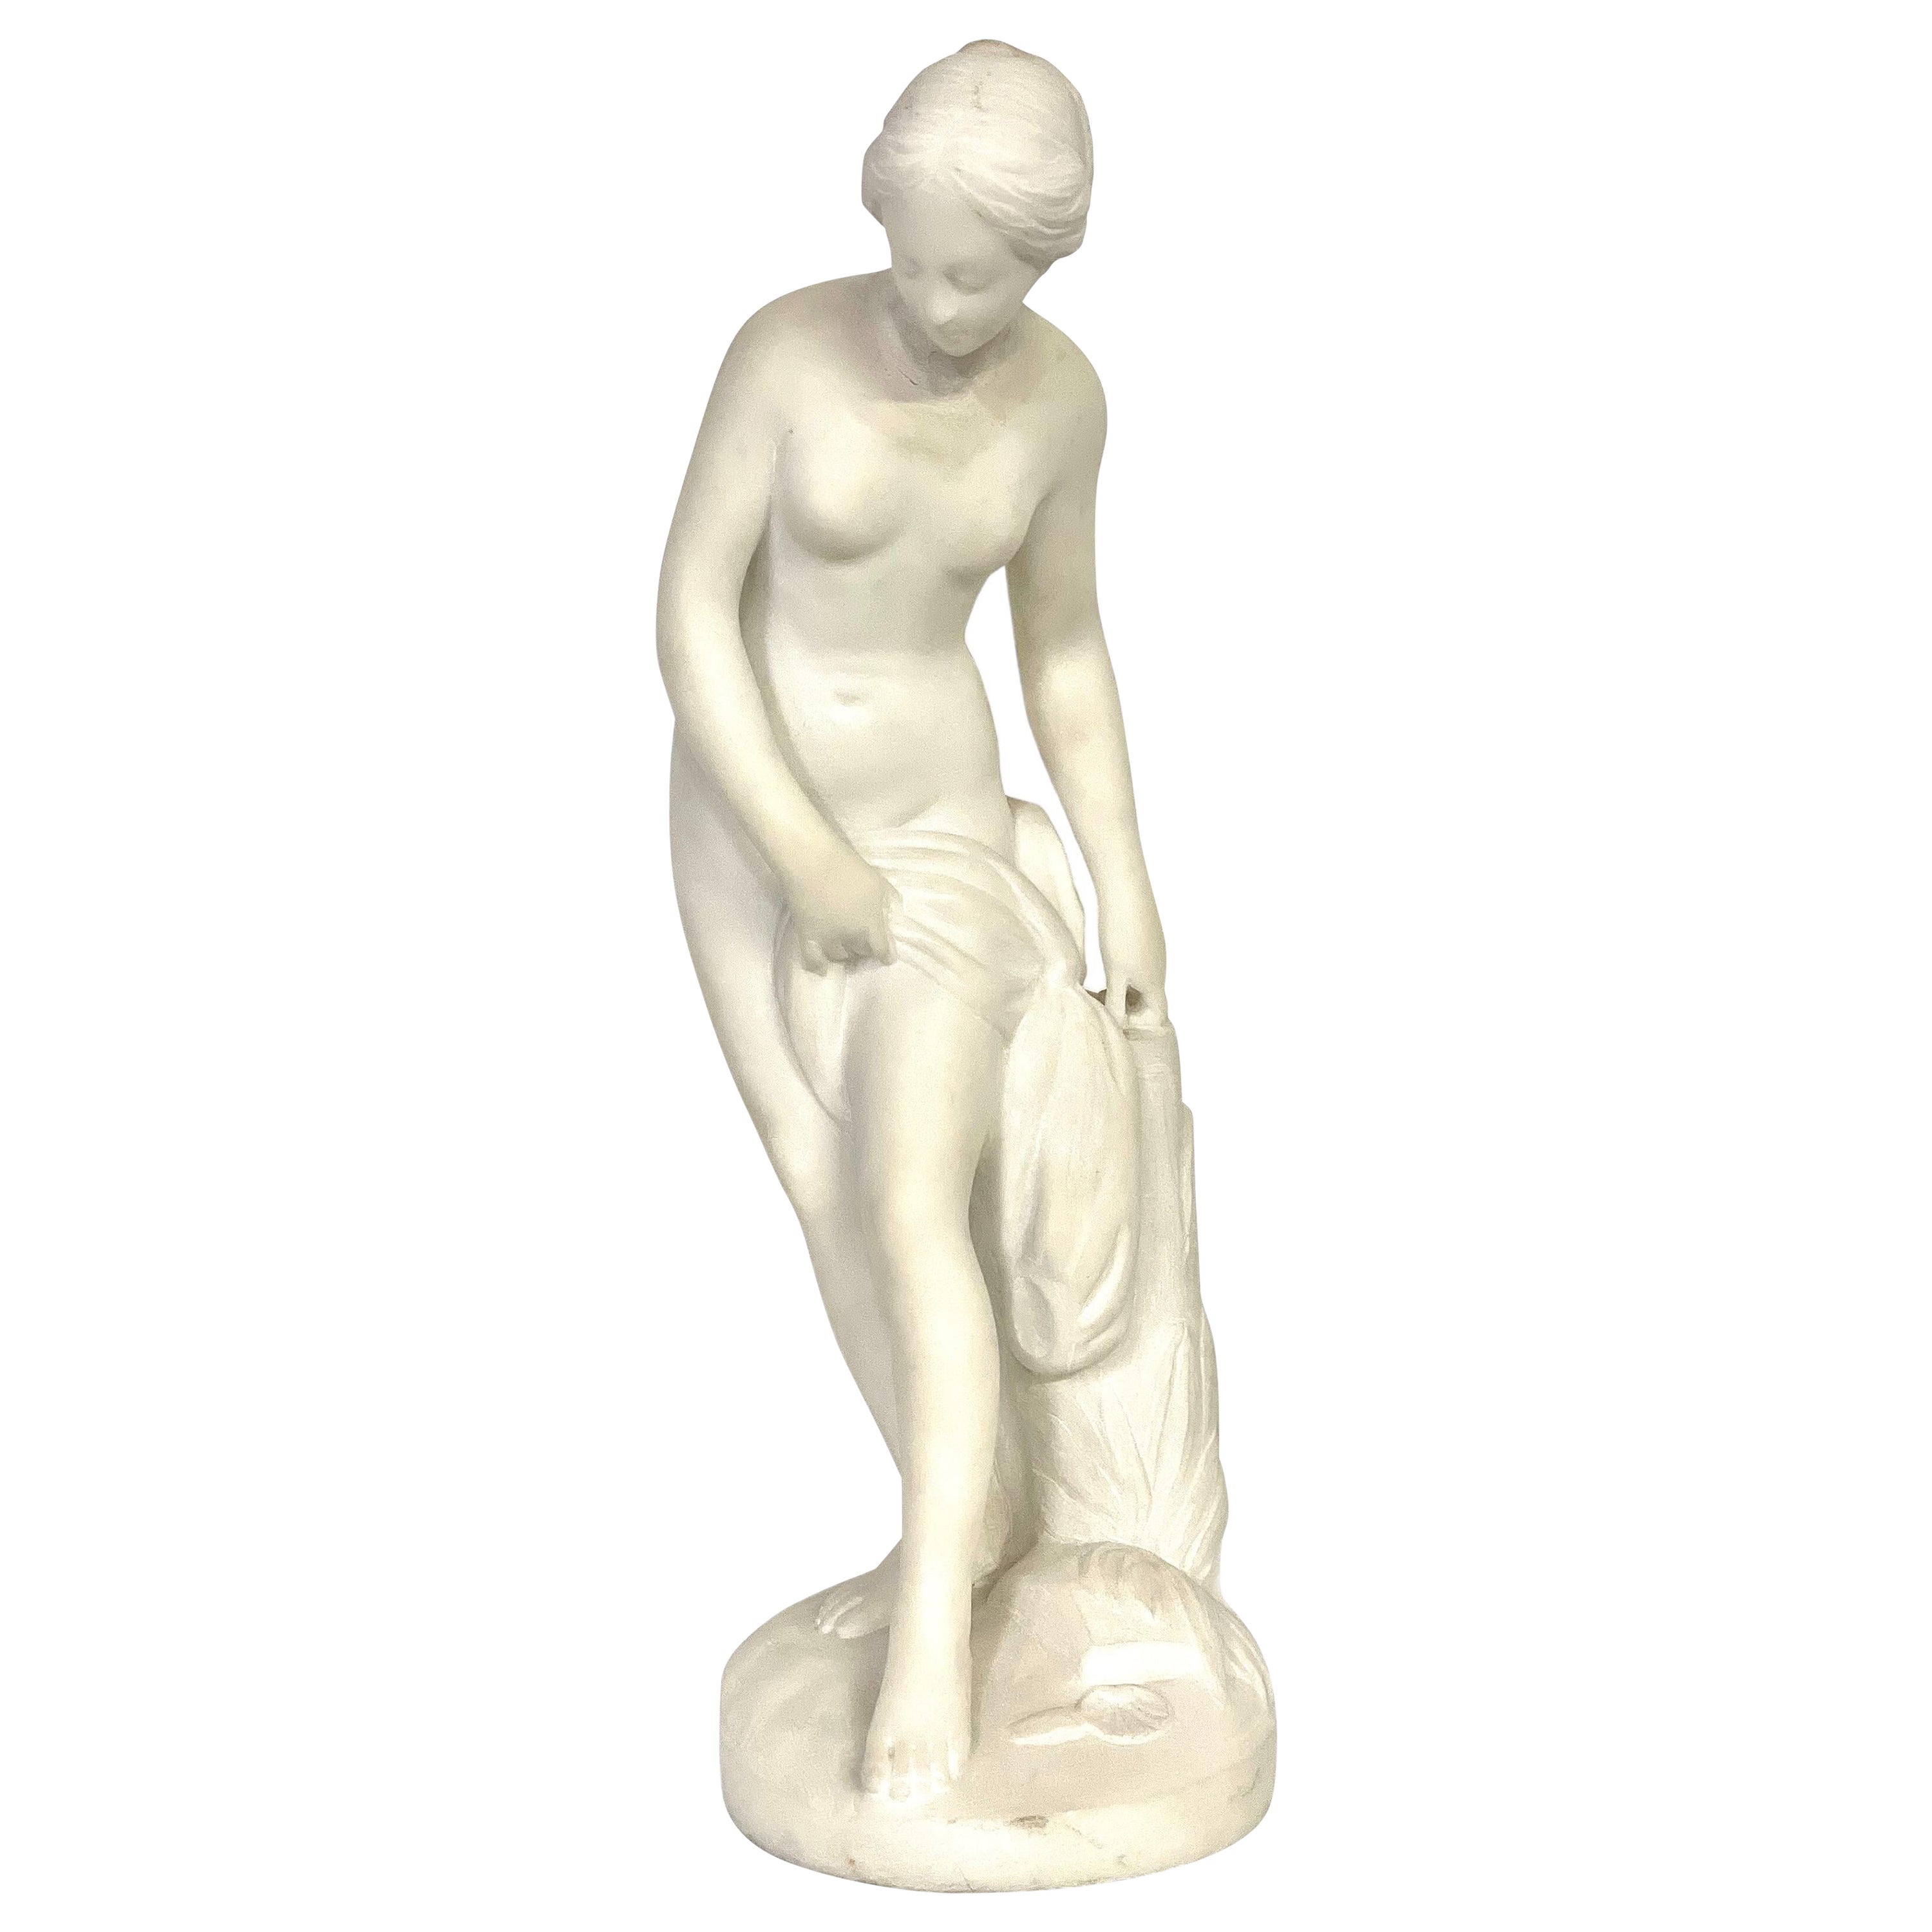 Escultura de mármol blanco del siglo XIX "La Baigneuse" inspirada en Falconet